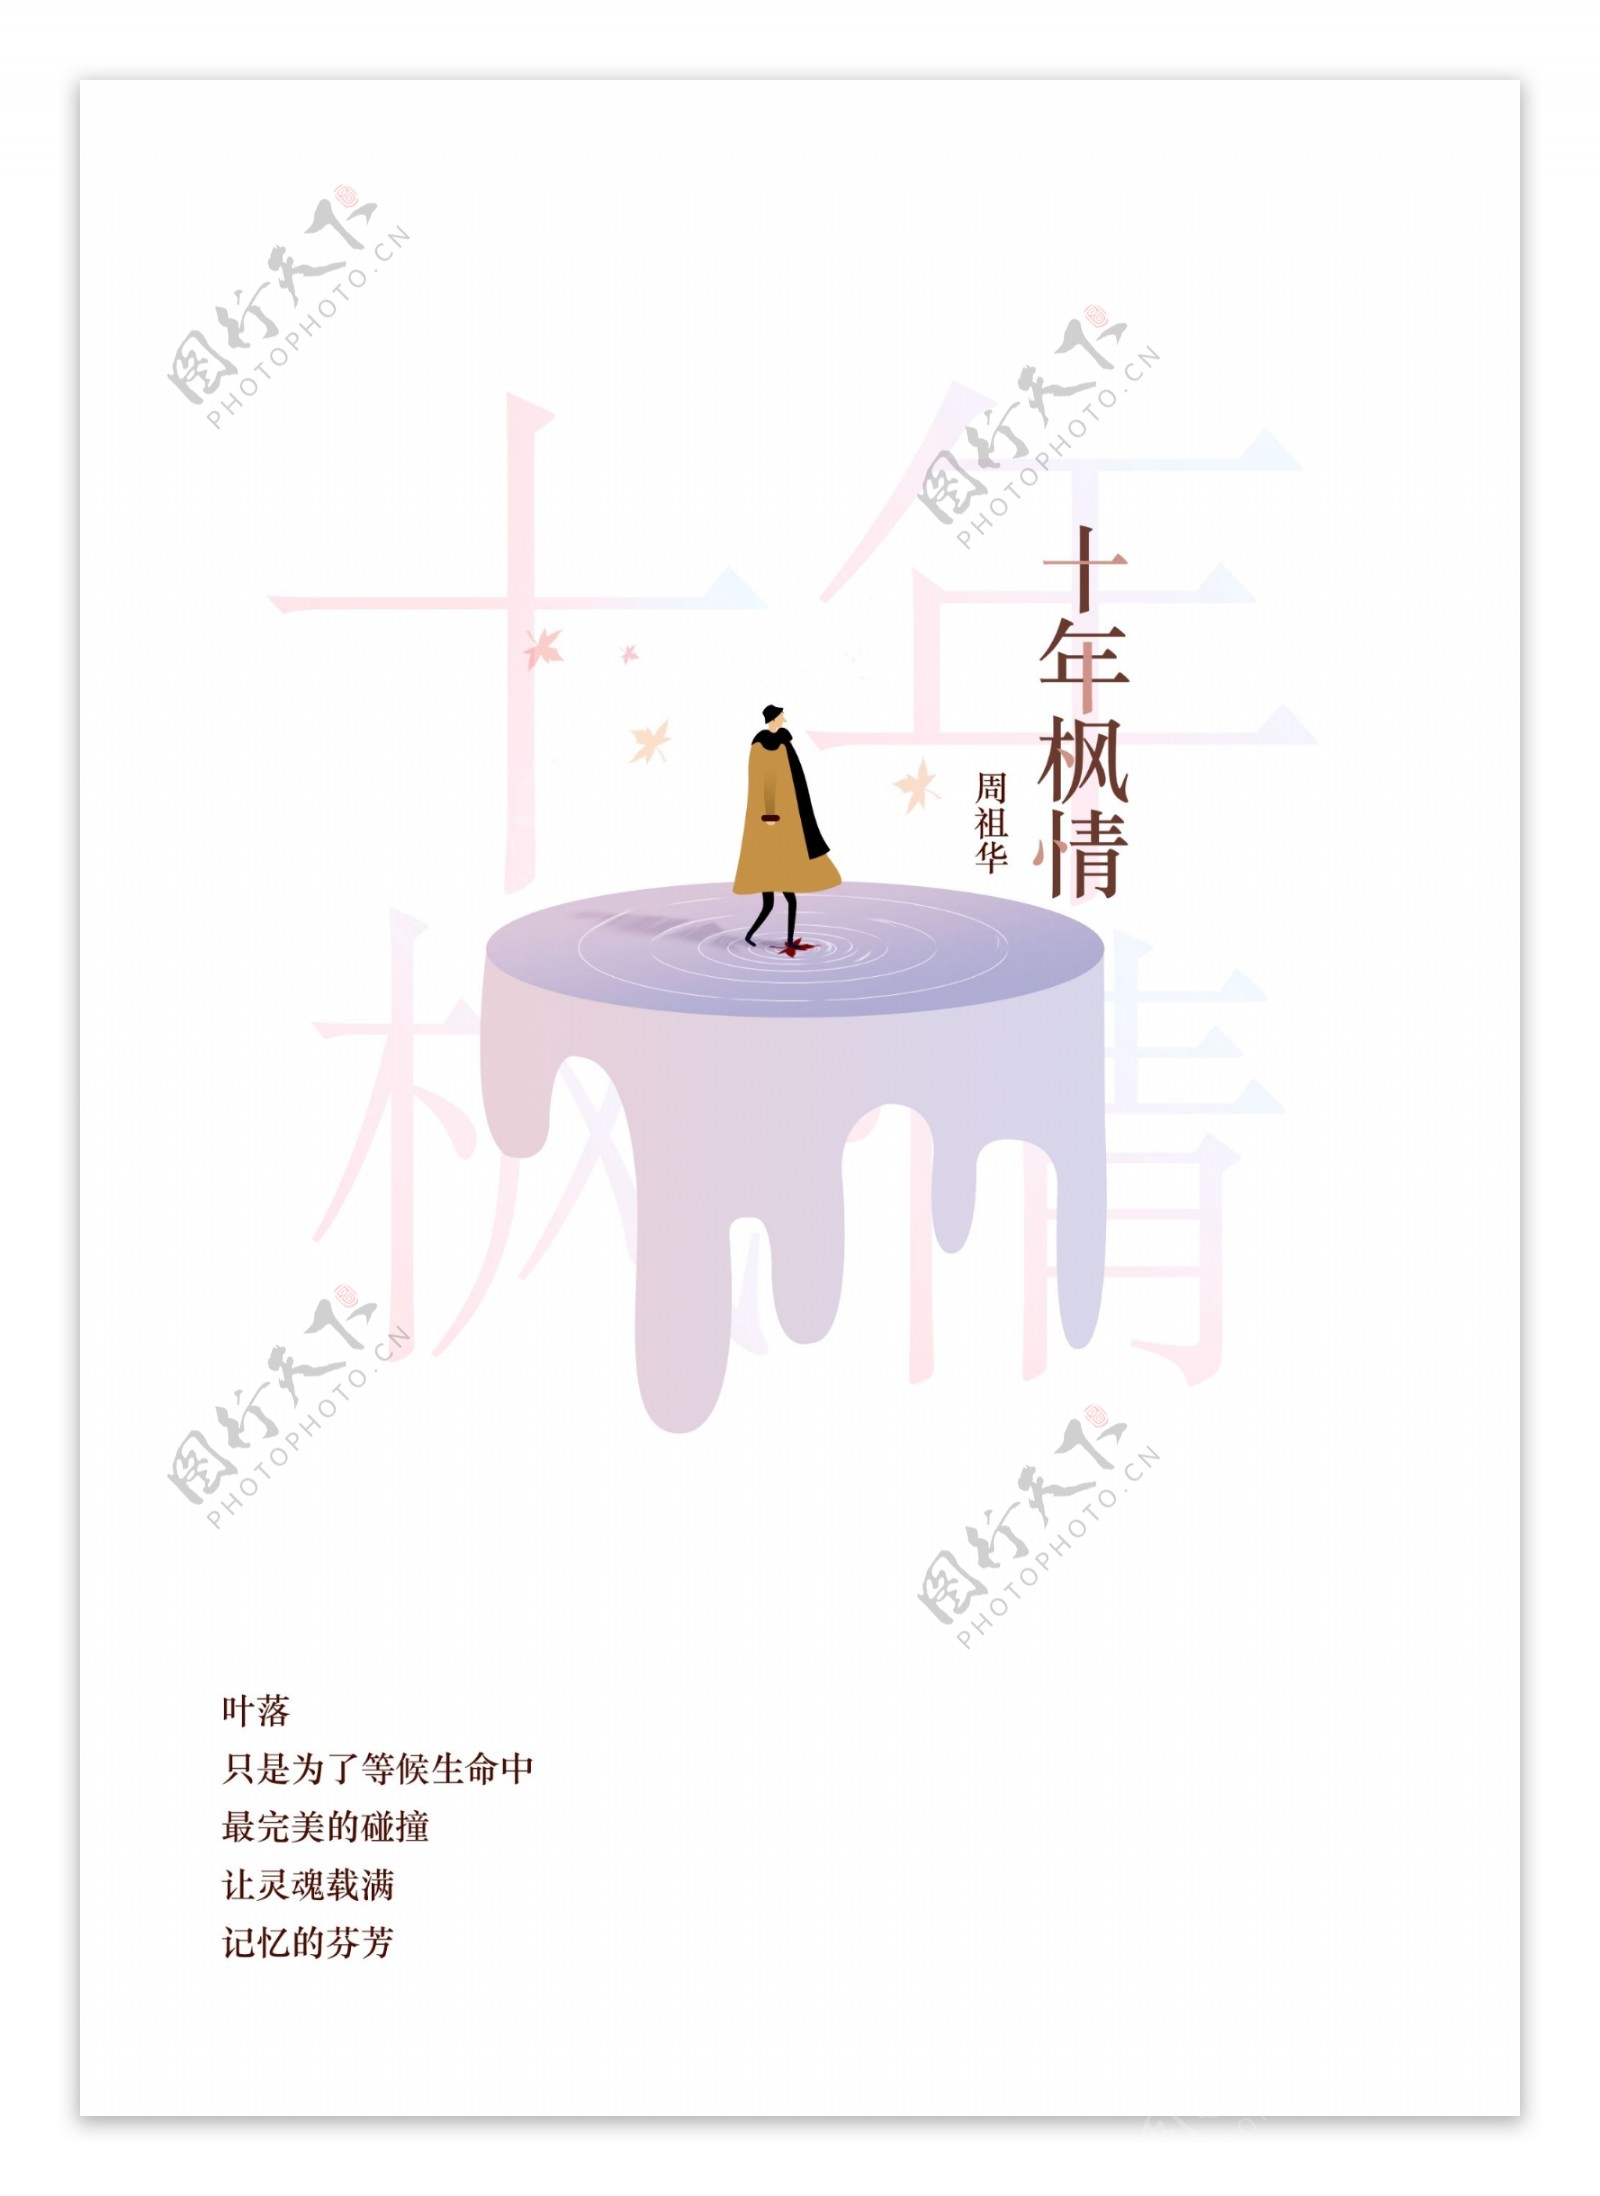 十年枫情书籍封面设计